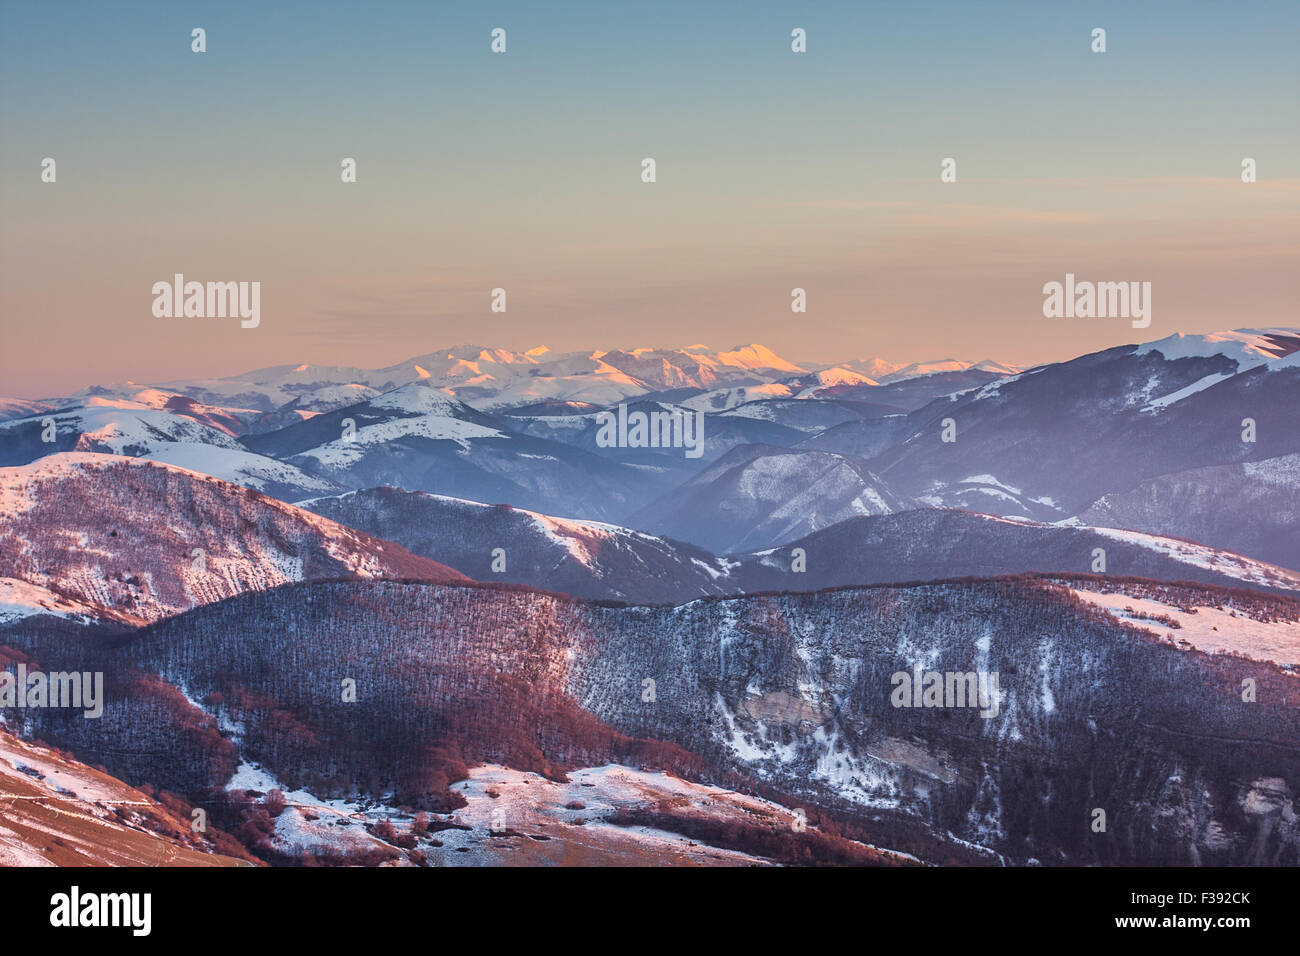 Sibillini Berge oder Sibyllinischen Berge im Schnee bei Sonnenuntergang, aerial View von Monte Cucco, Monte Cucco in den Apenninen Stockfoto